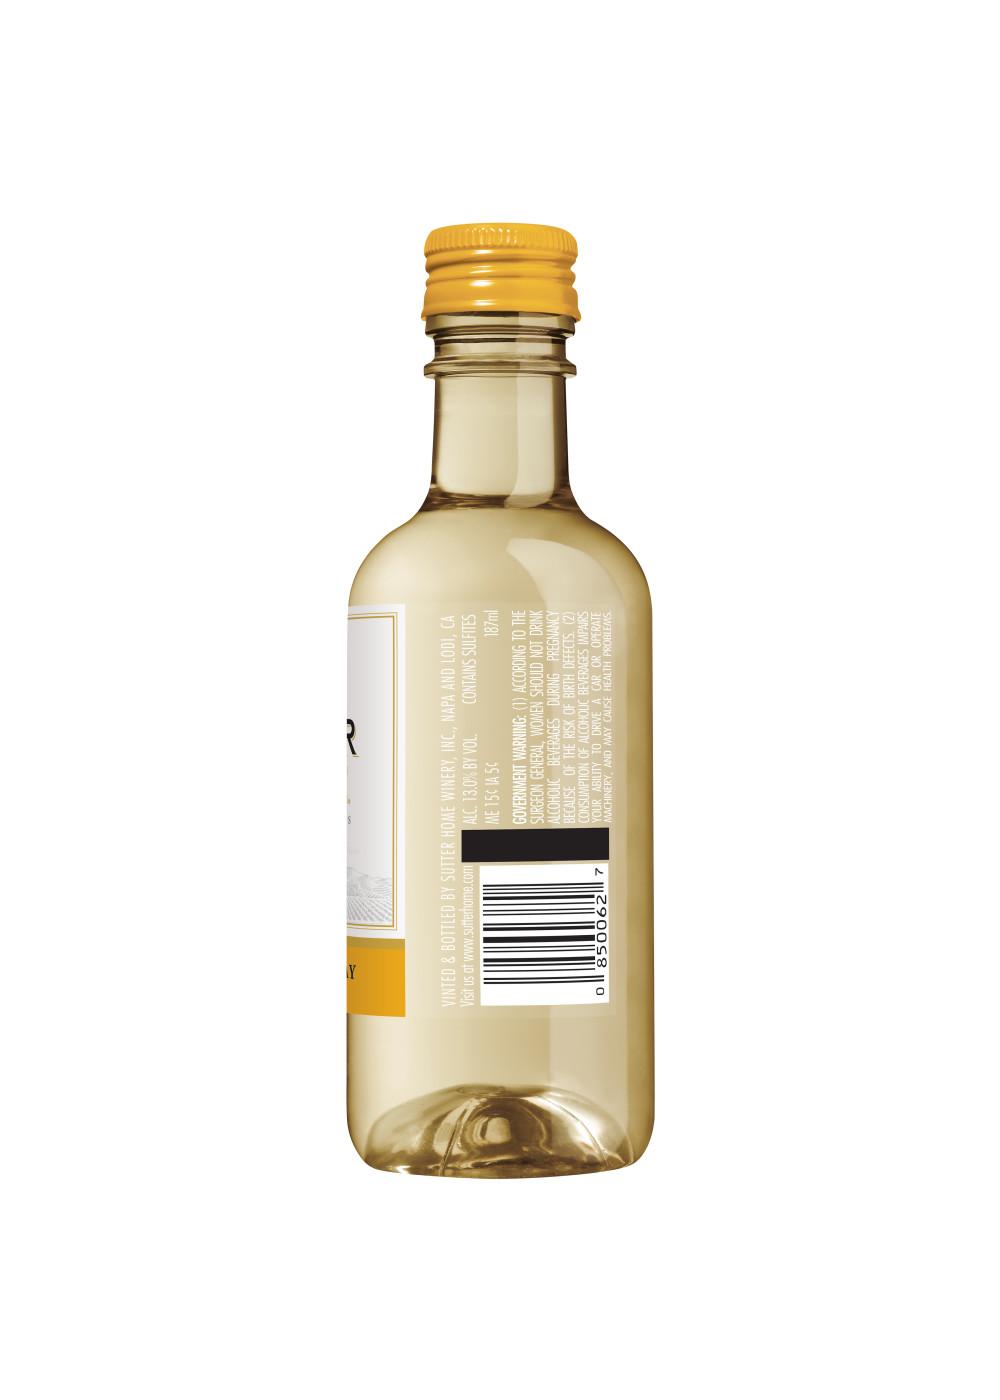 Sutter Home Family Vineyards Chardonnay White Wine 4 pk Bottles; image 8 of 8